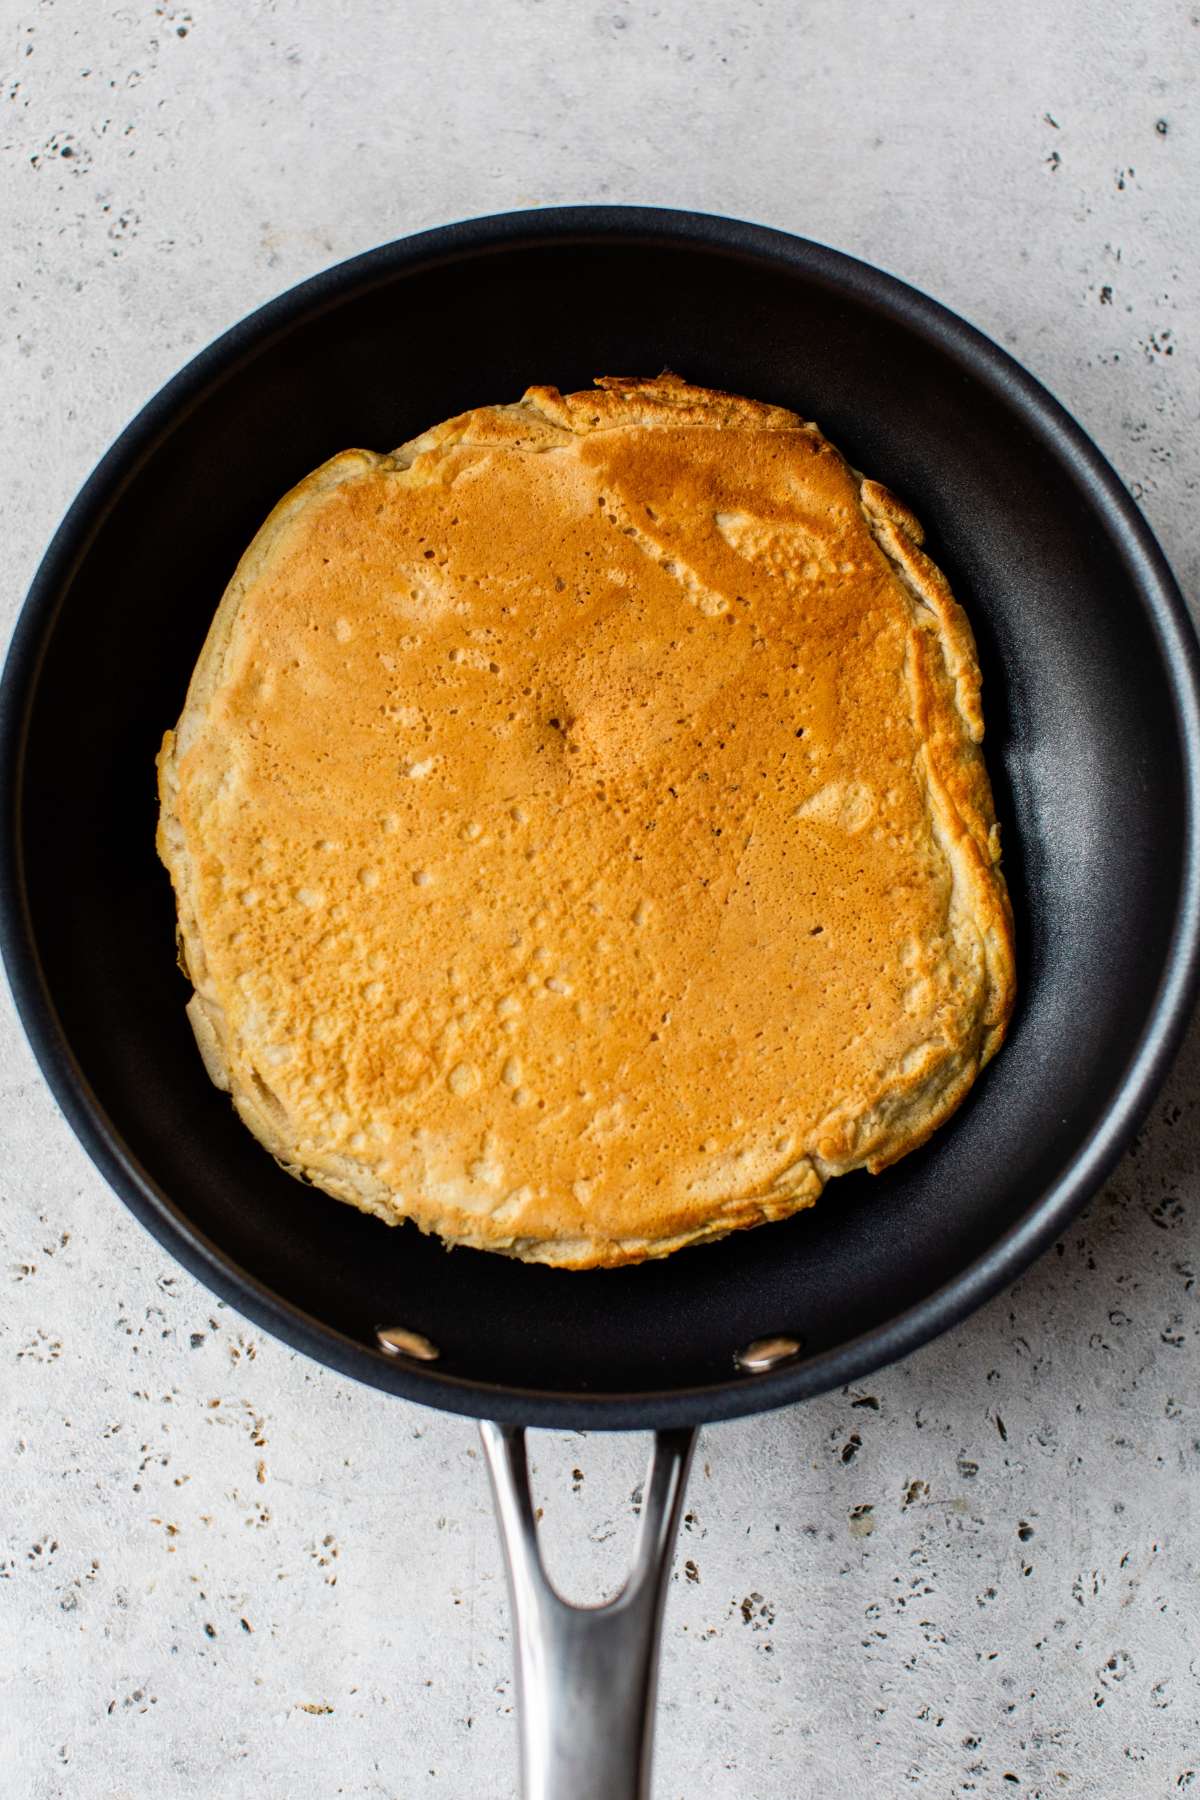 Pancake cooking in a pan.